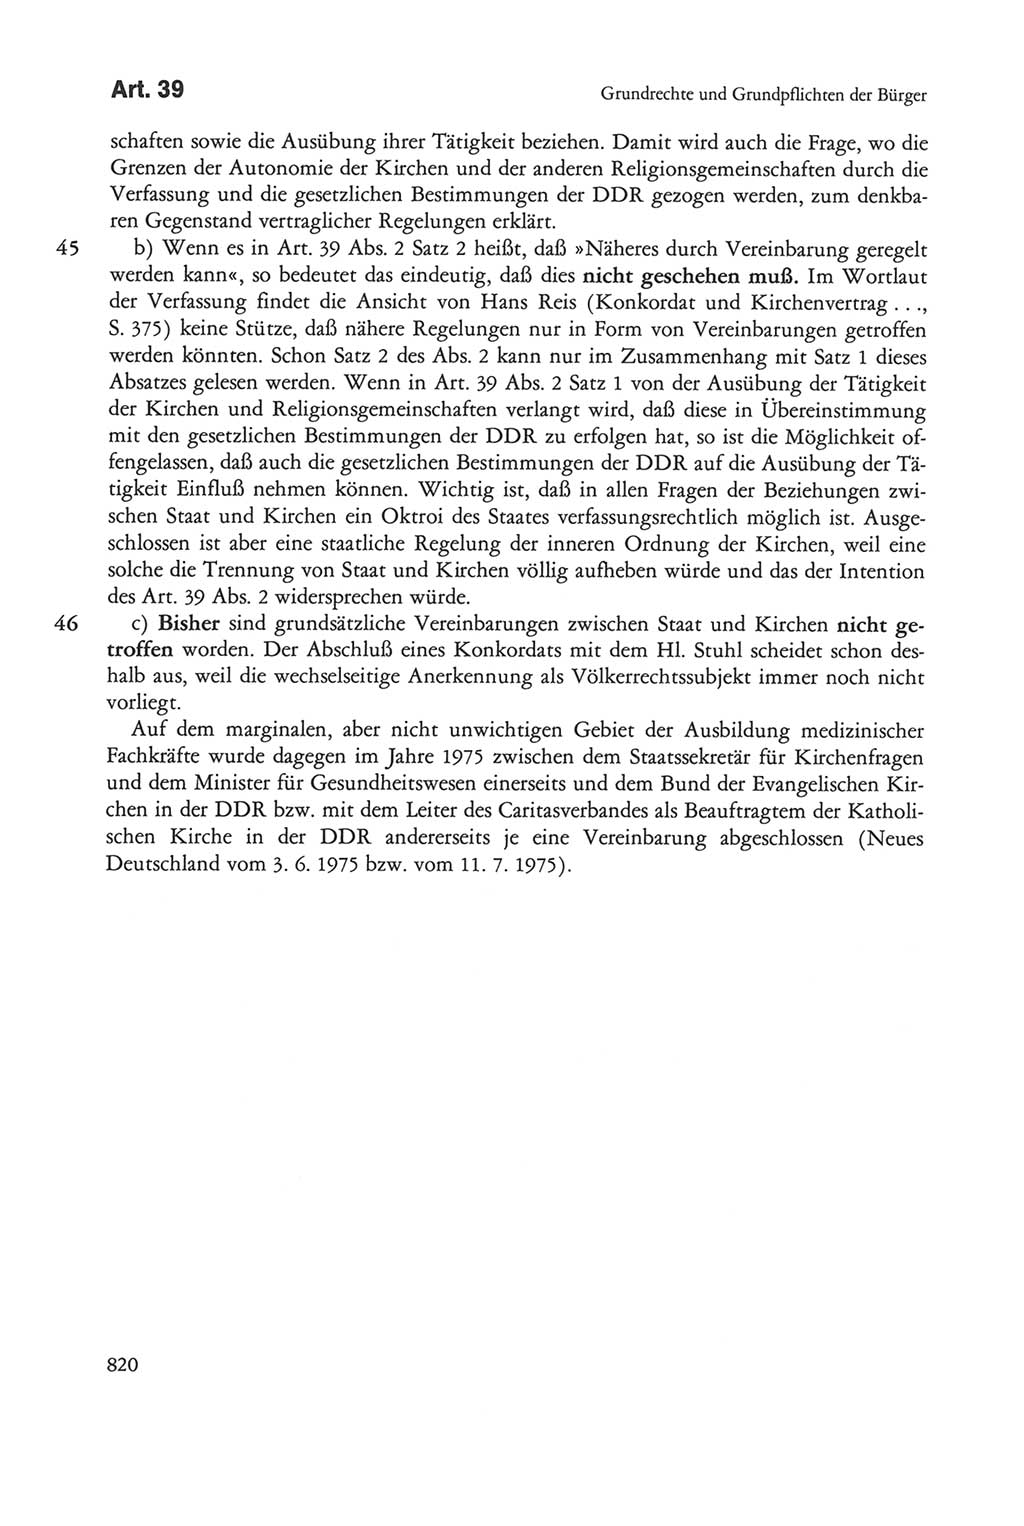 Die sozialistische Verfassung der Deutschen Demokratischen Republik (DDR), Kommentar mit einem Nachtrag 1997, Seite 820 (Soz. Verf. DDR Komm. Nachtr. 1997, S. 820)